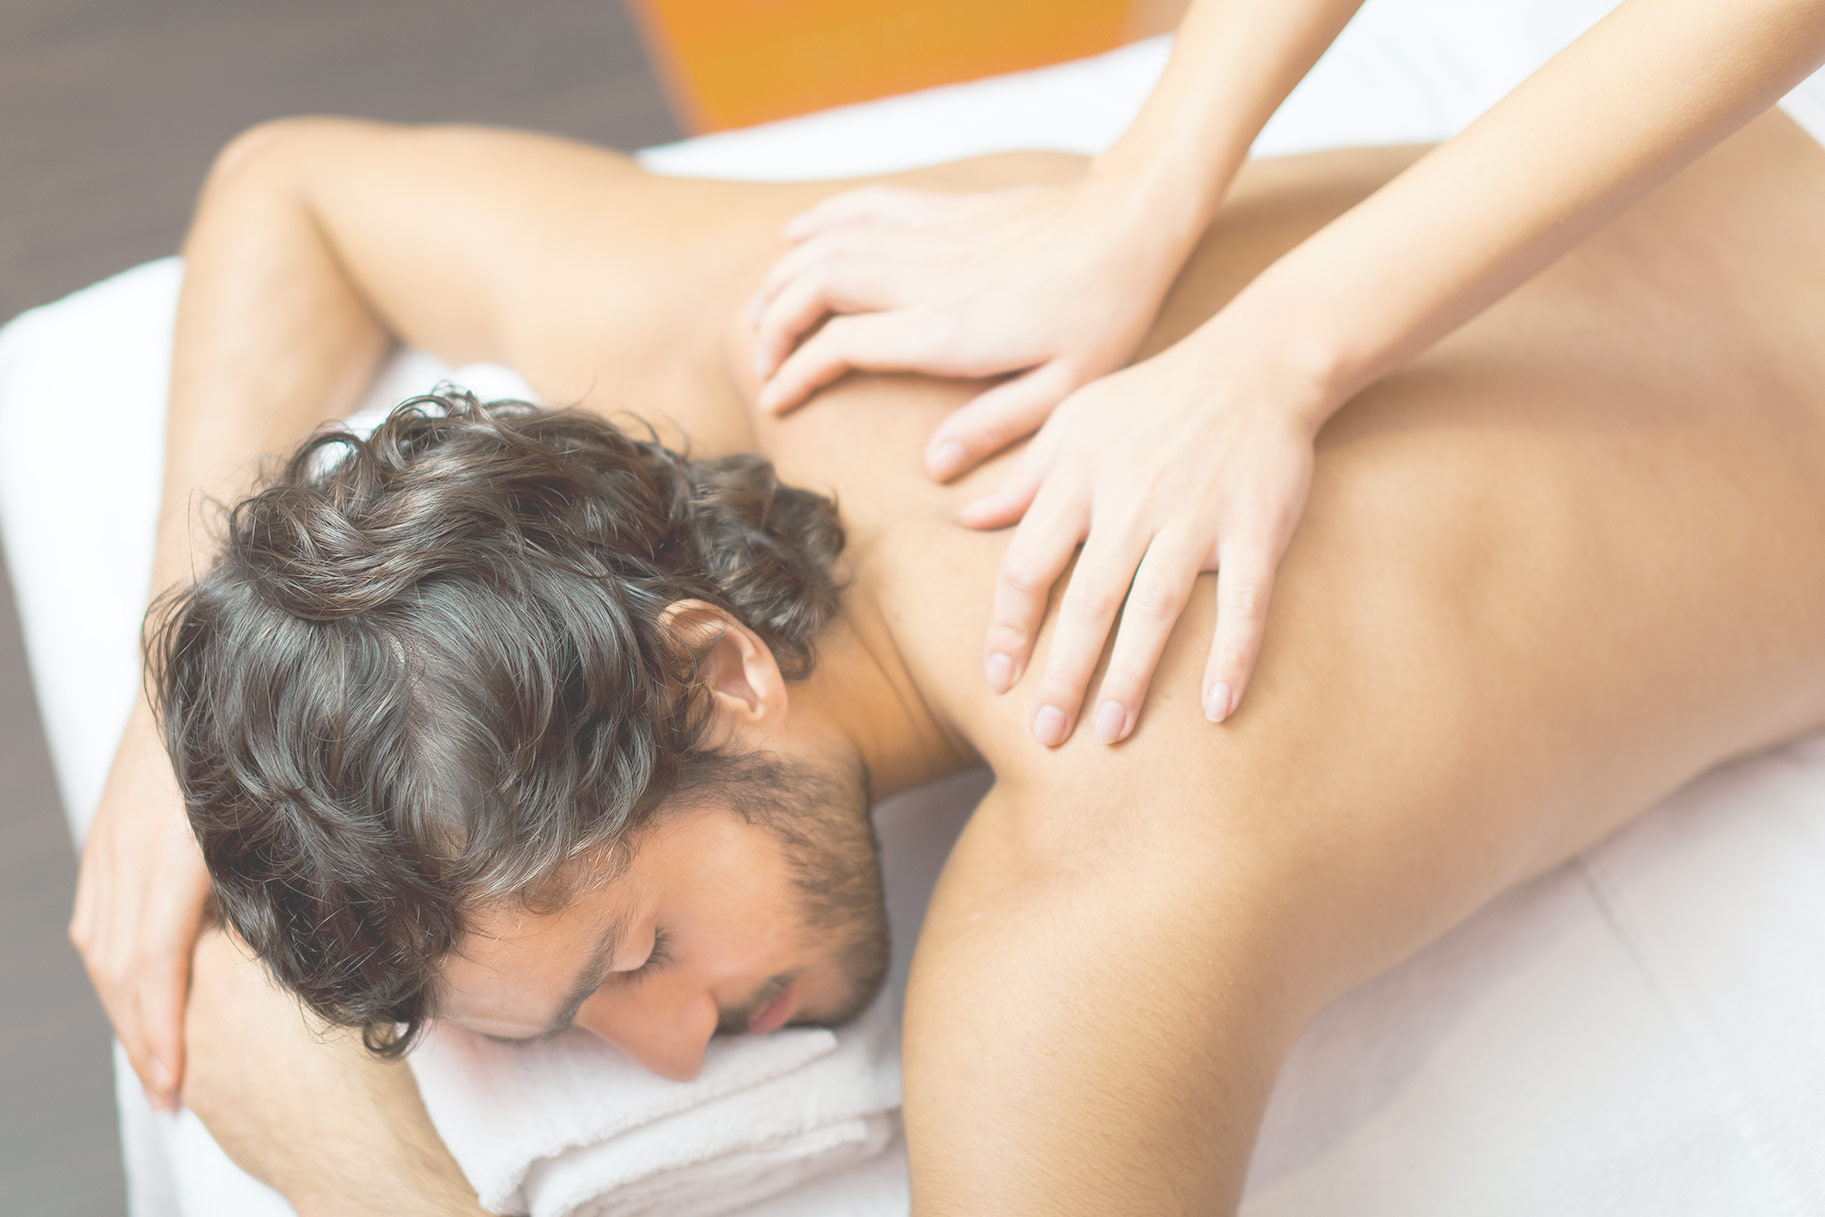 Erotic massage parlour vancouver